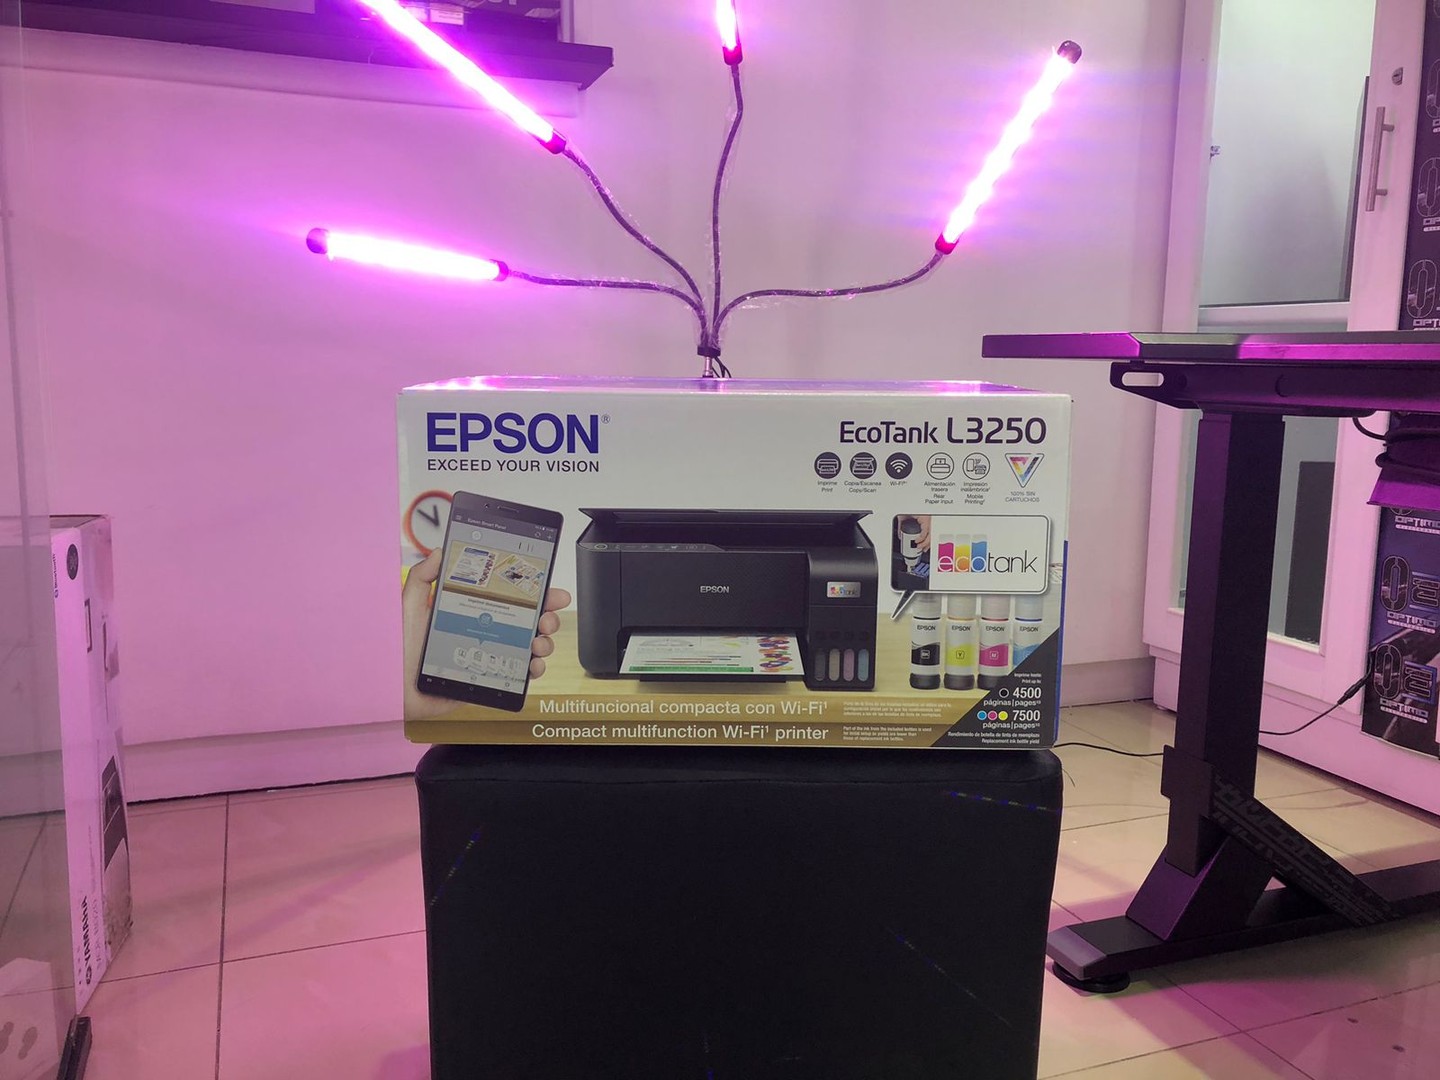 impresoras y scanners - Impresora Inalambrica y desde el celular Multifuncion Epson L3250 mas garantia